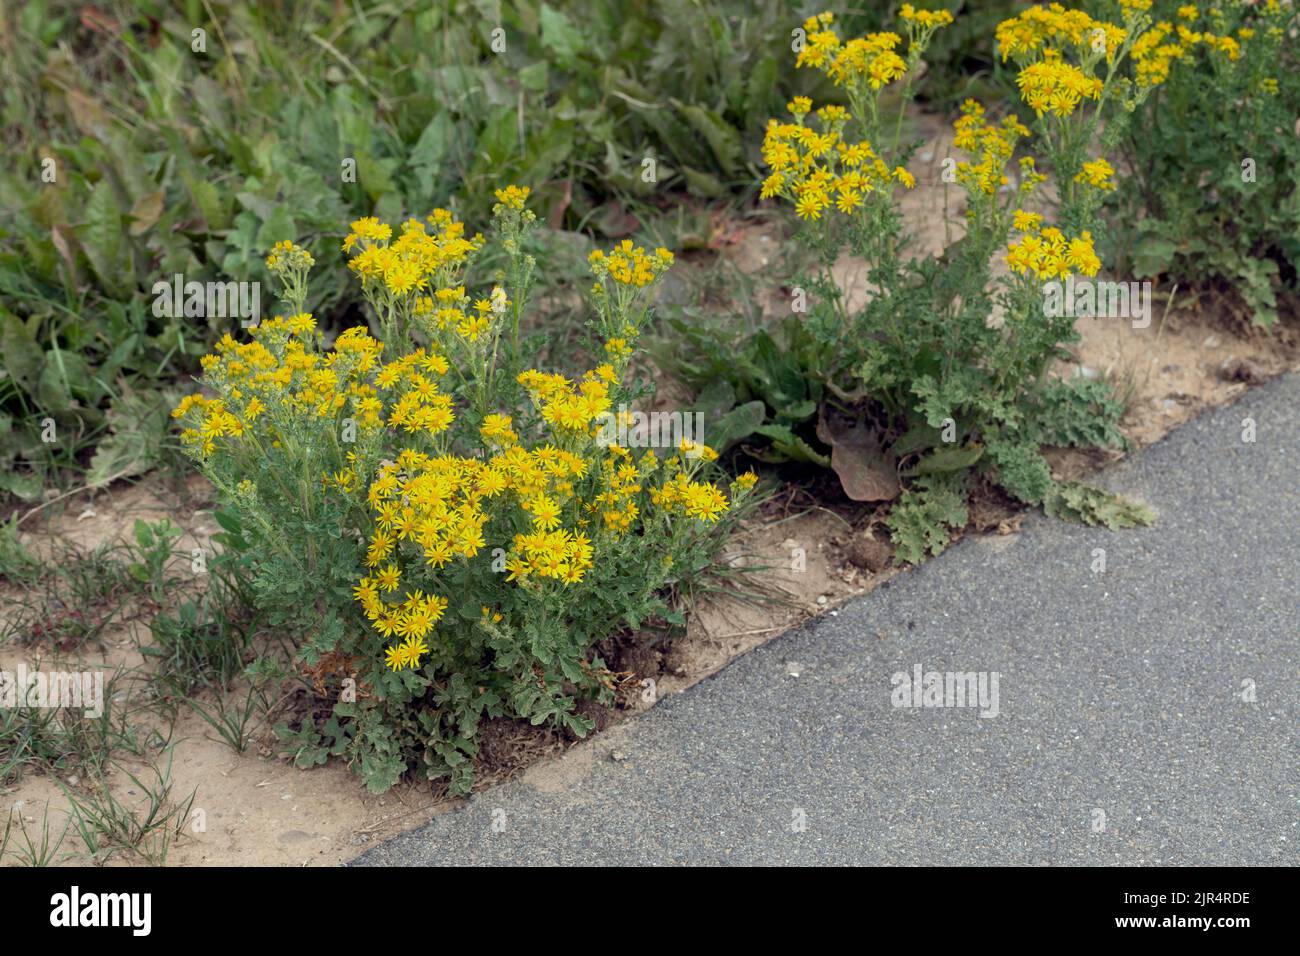 Beifuß, stinkender willie, Beifuß, Beifuß (Senecio jacobaea), blühend am Straßenrand, Deutschland Stockfoto